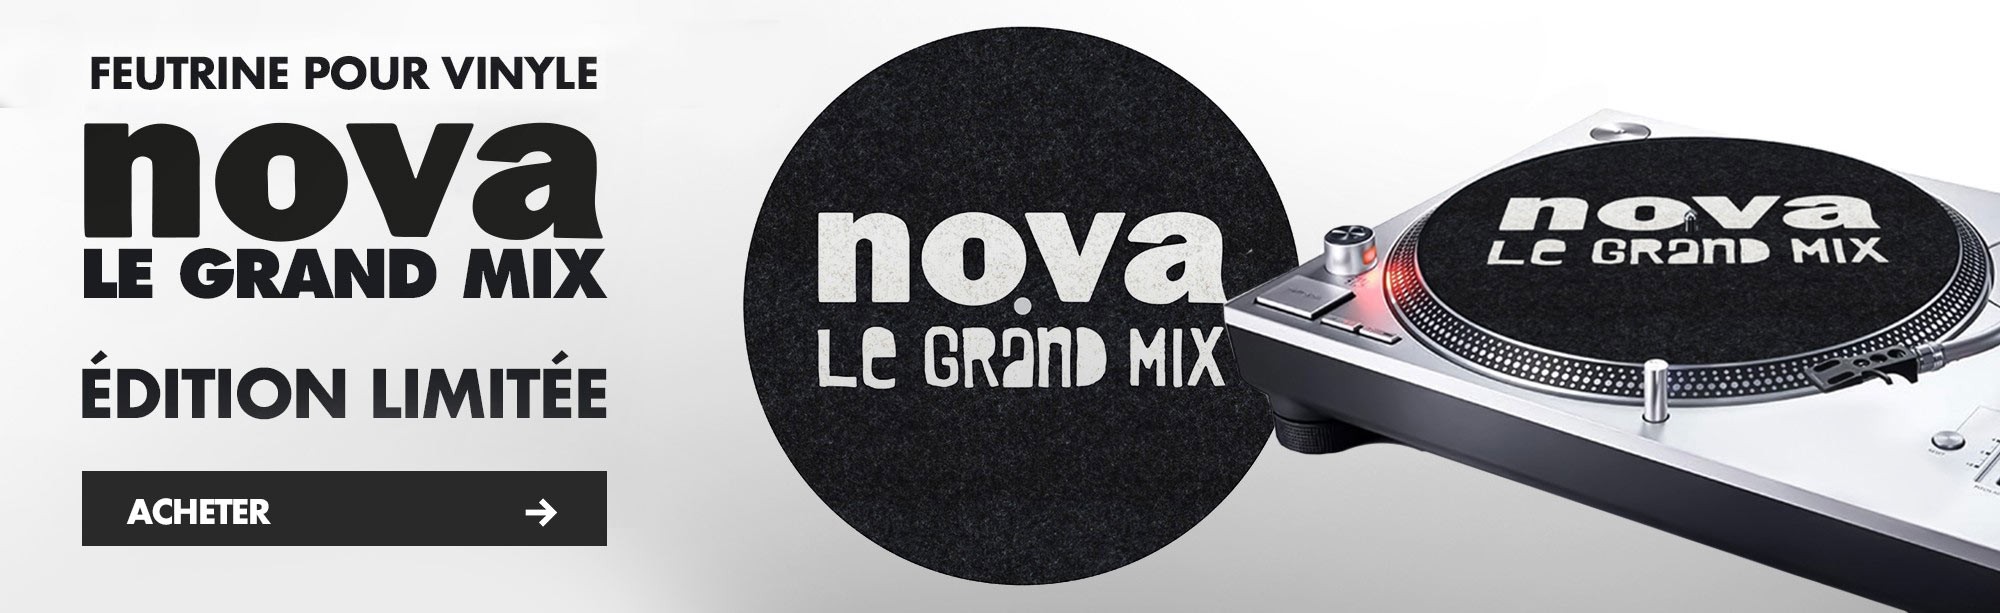 Feutrine Nova Le Grand Mix pour habiller votre platine vinyle.